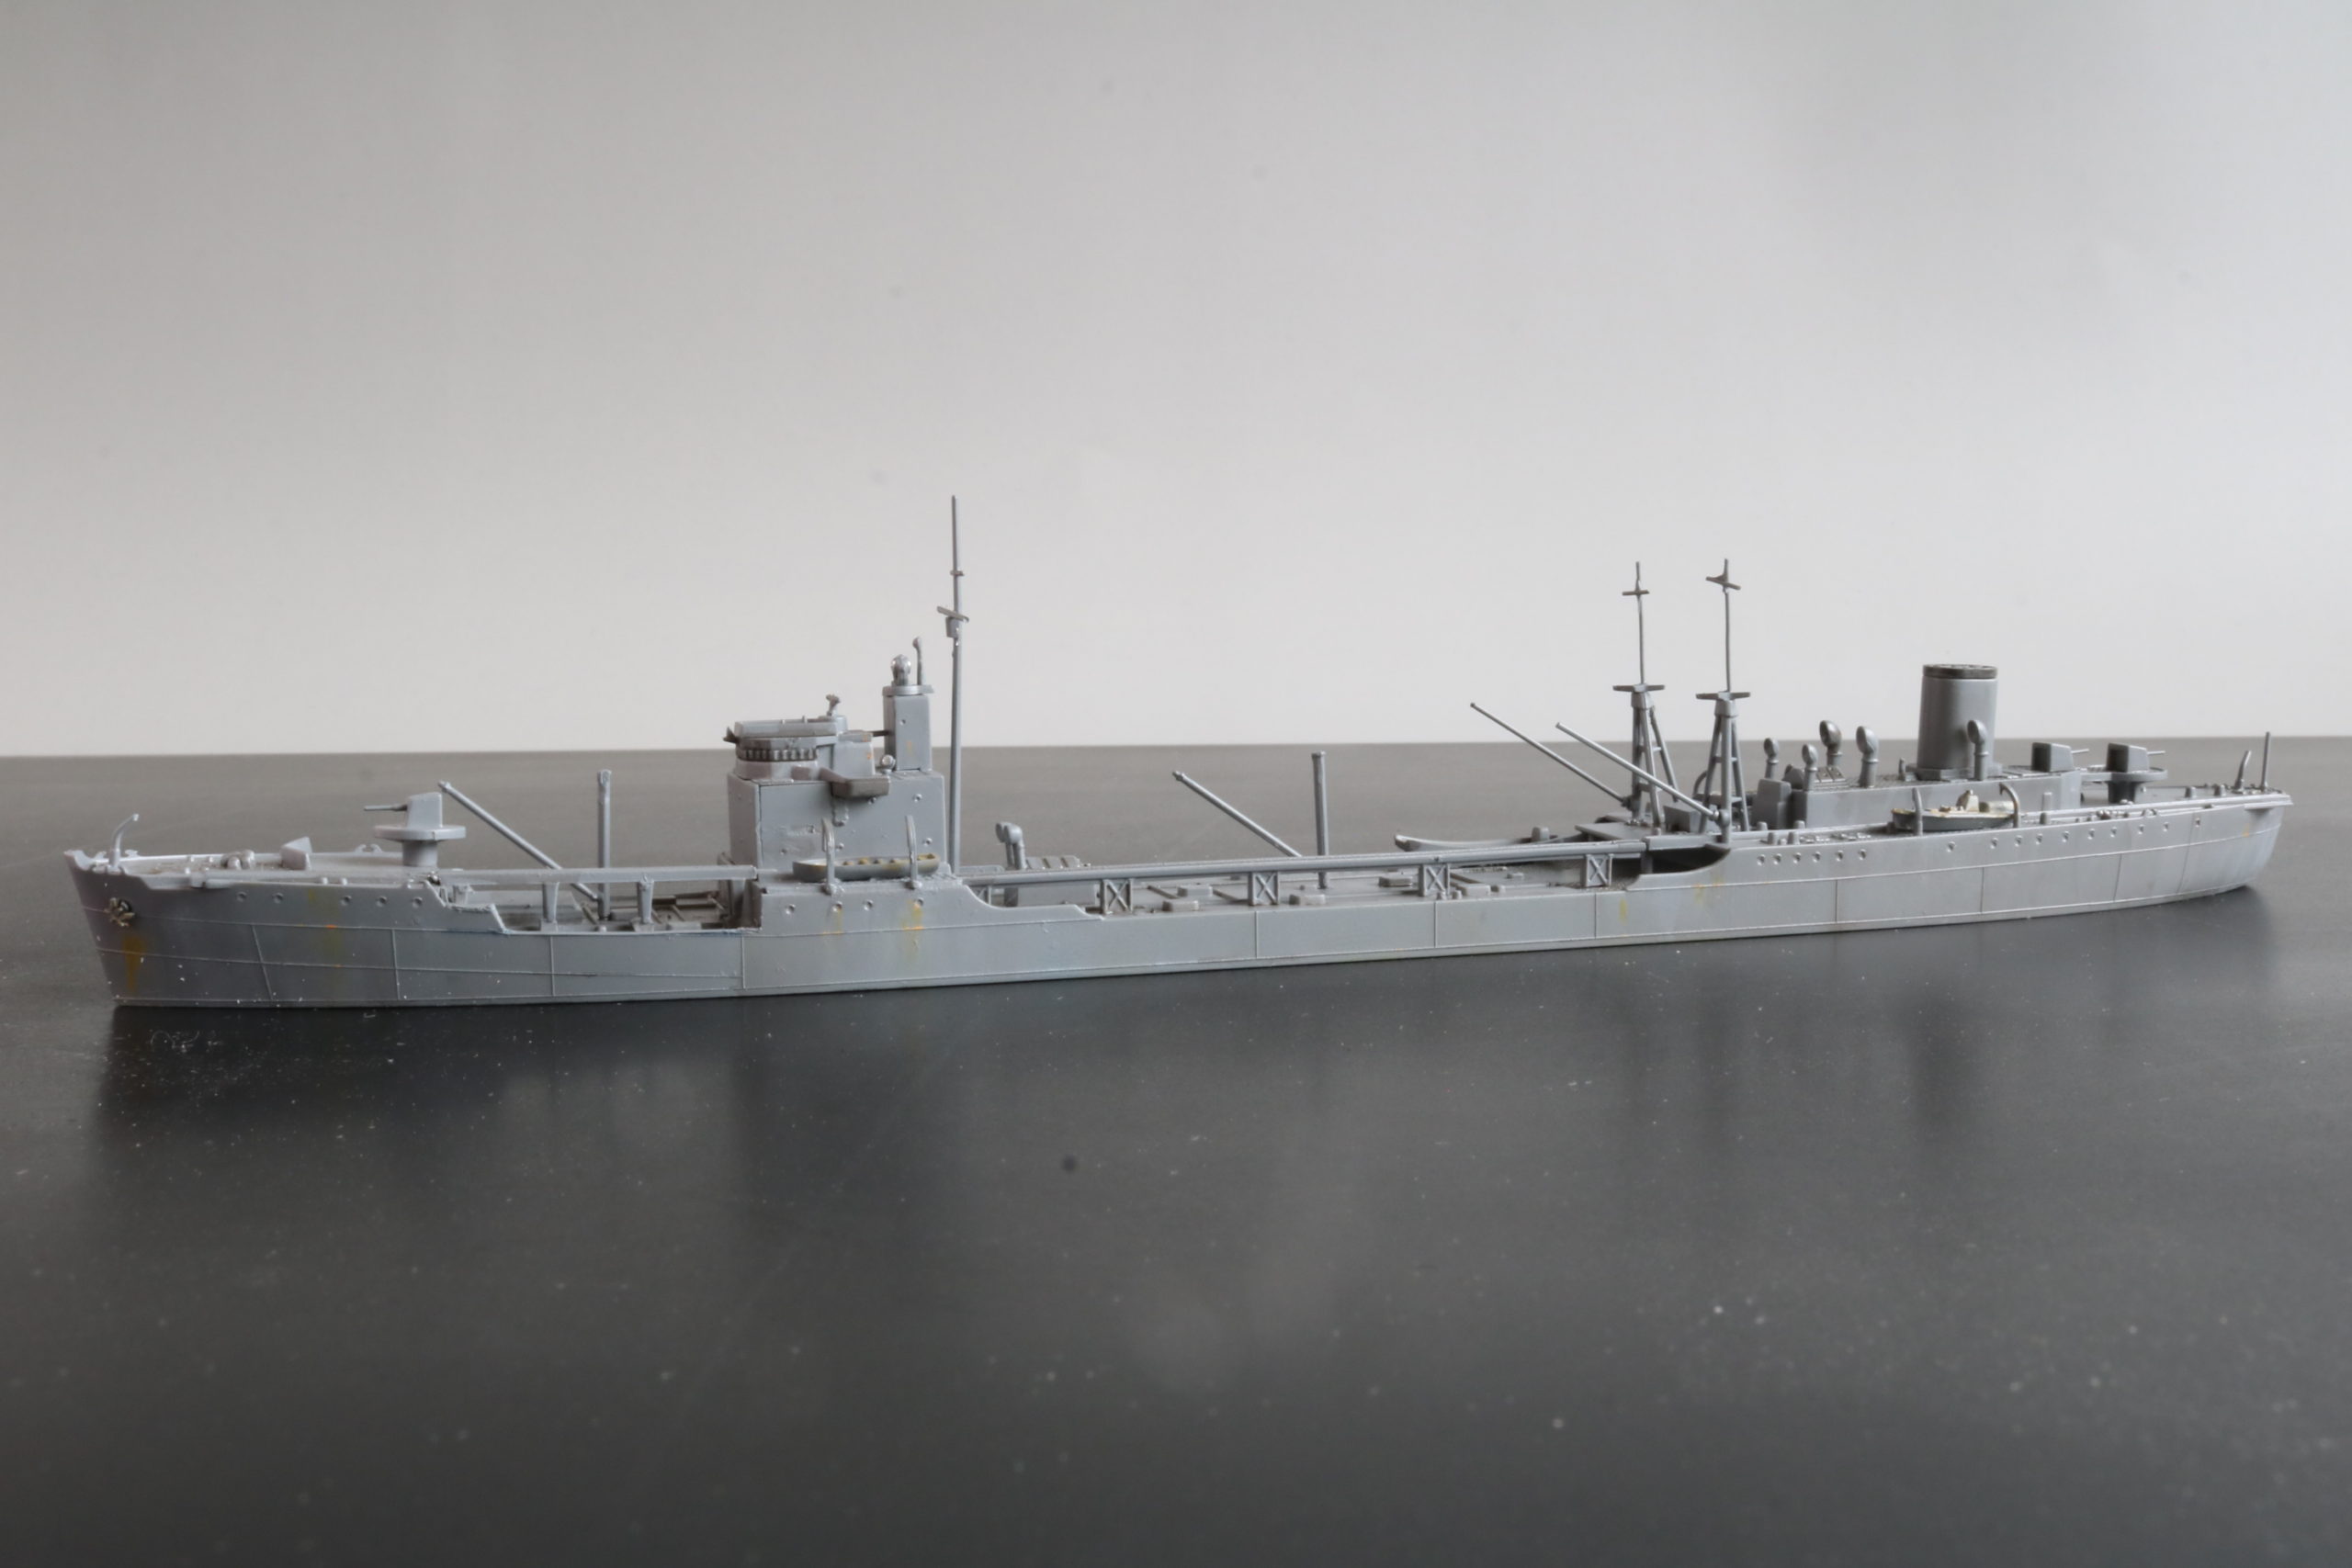 給油艦 風早、Tanker Kazehaya、1/700, アオシマ模型, Aoshima